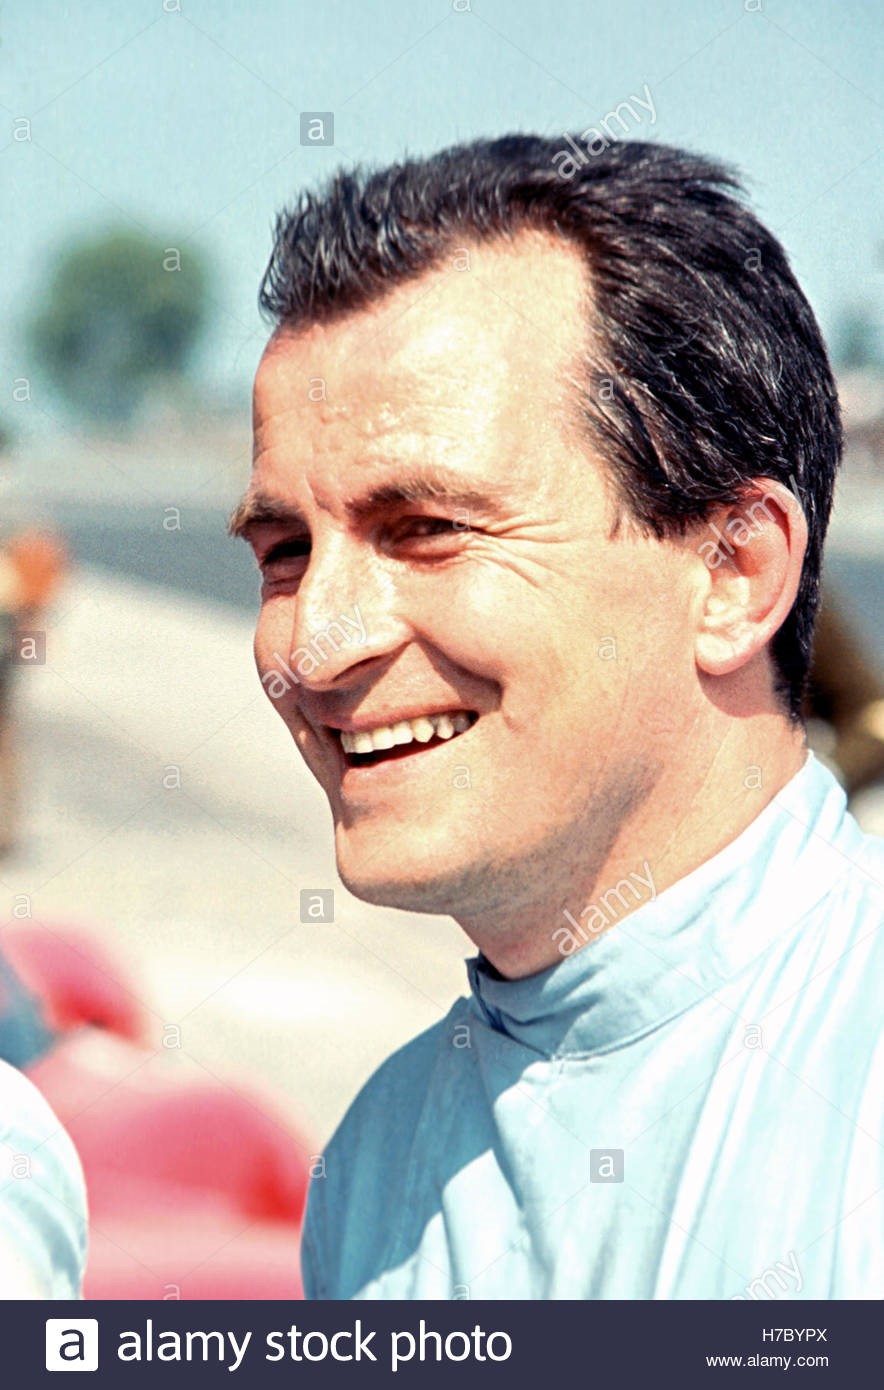 Lodovico Scarfiotti in 1966.